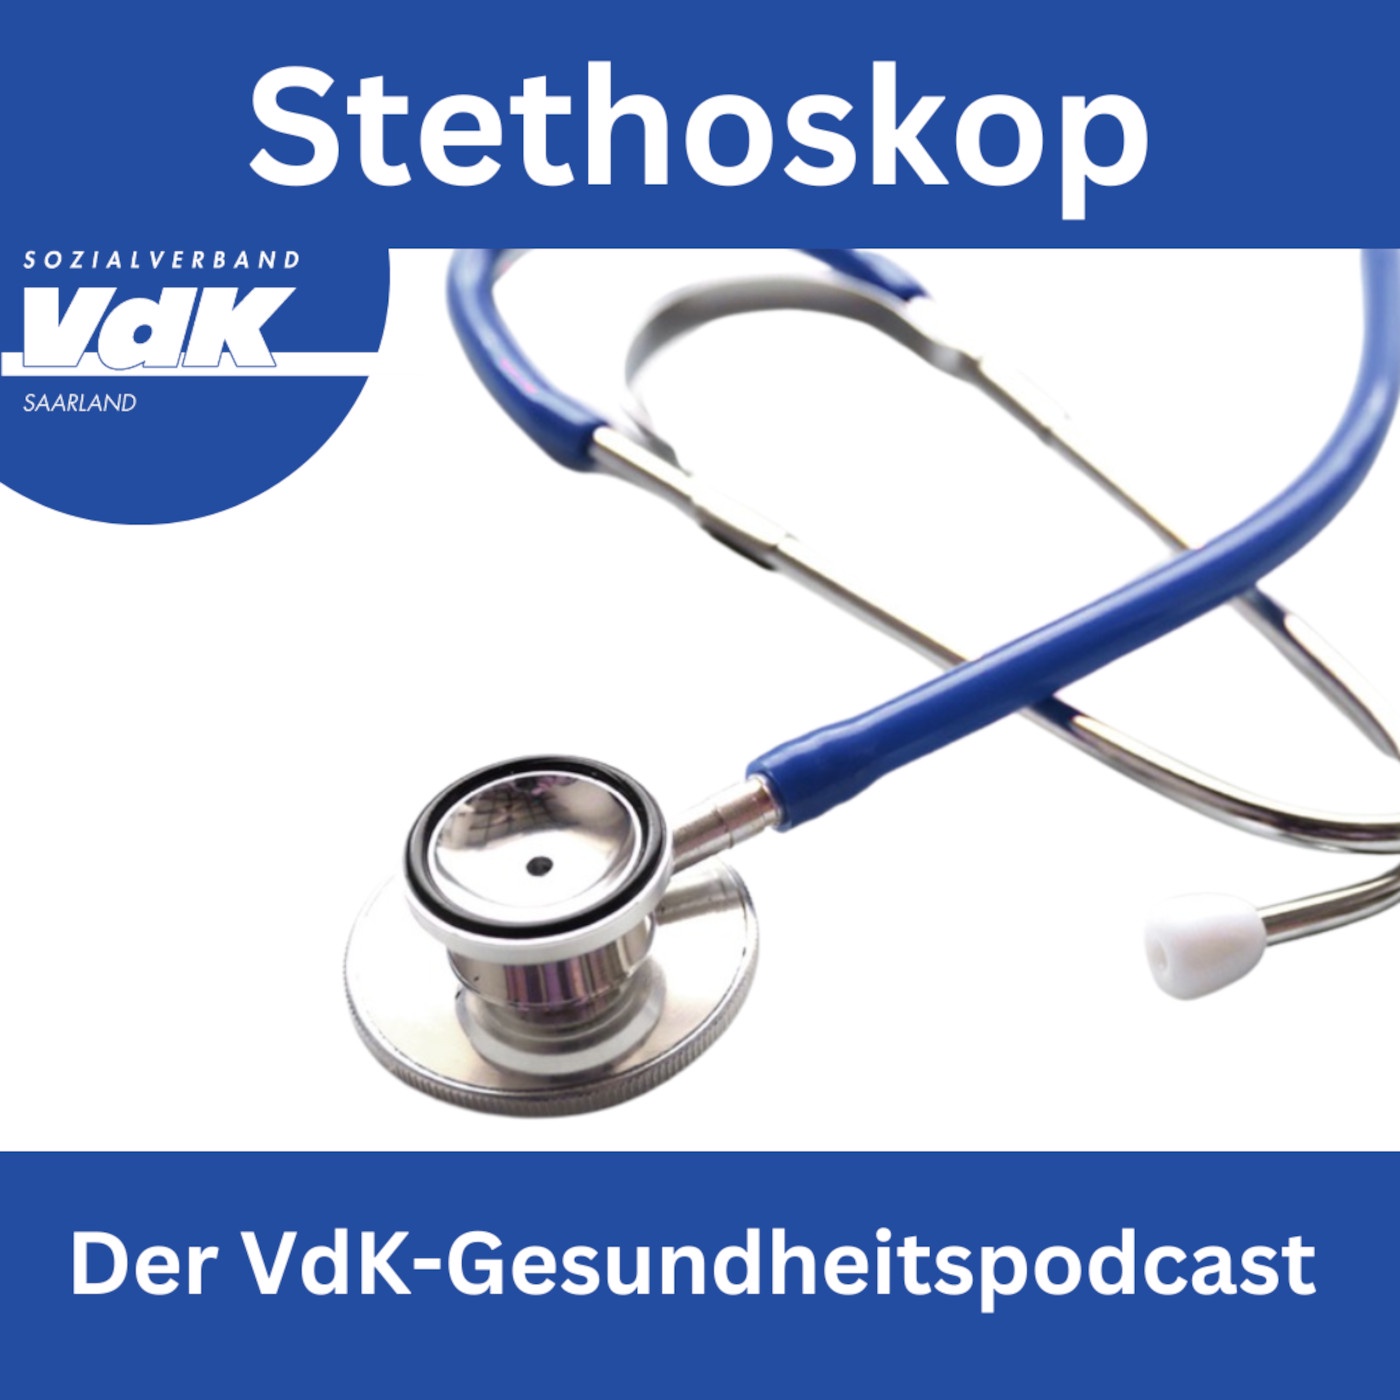 Stethoskop | Der VdK-Gesundheitspodcast